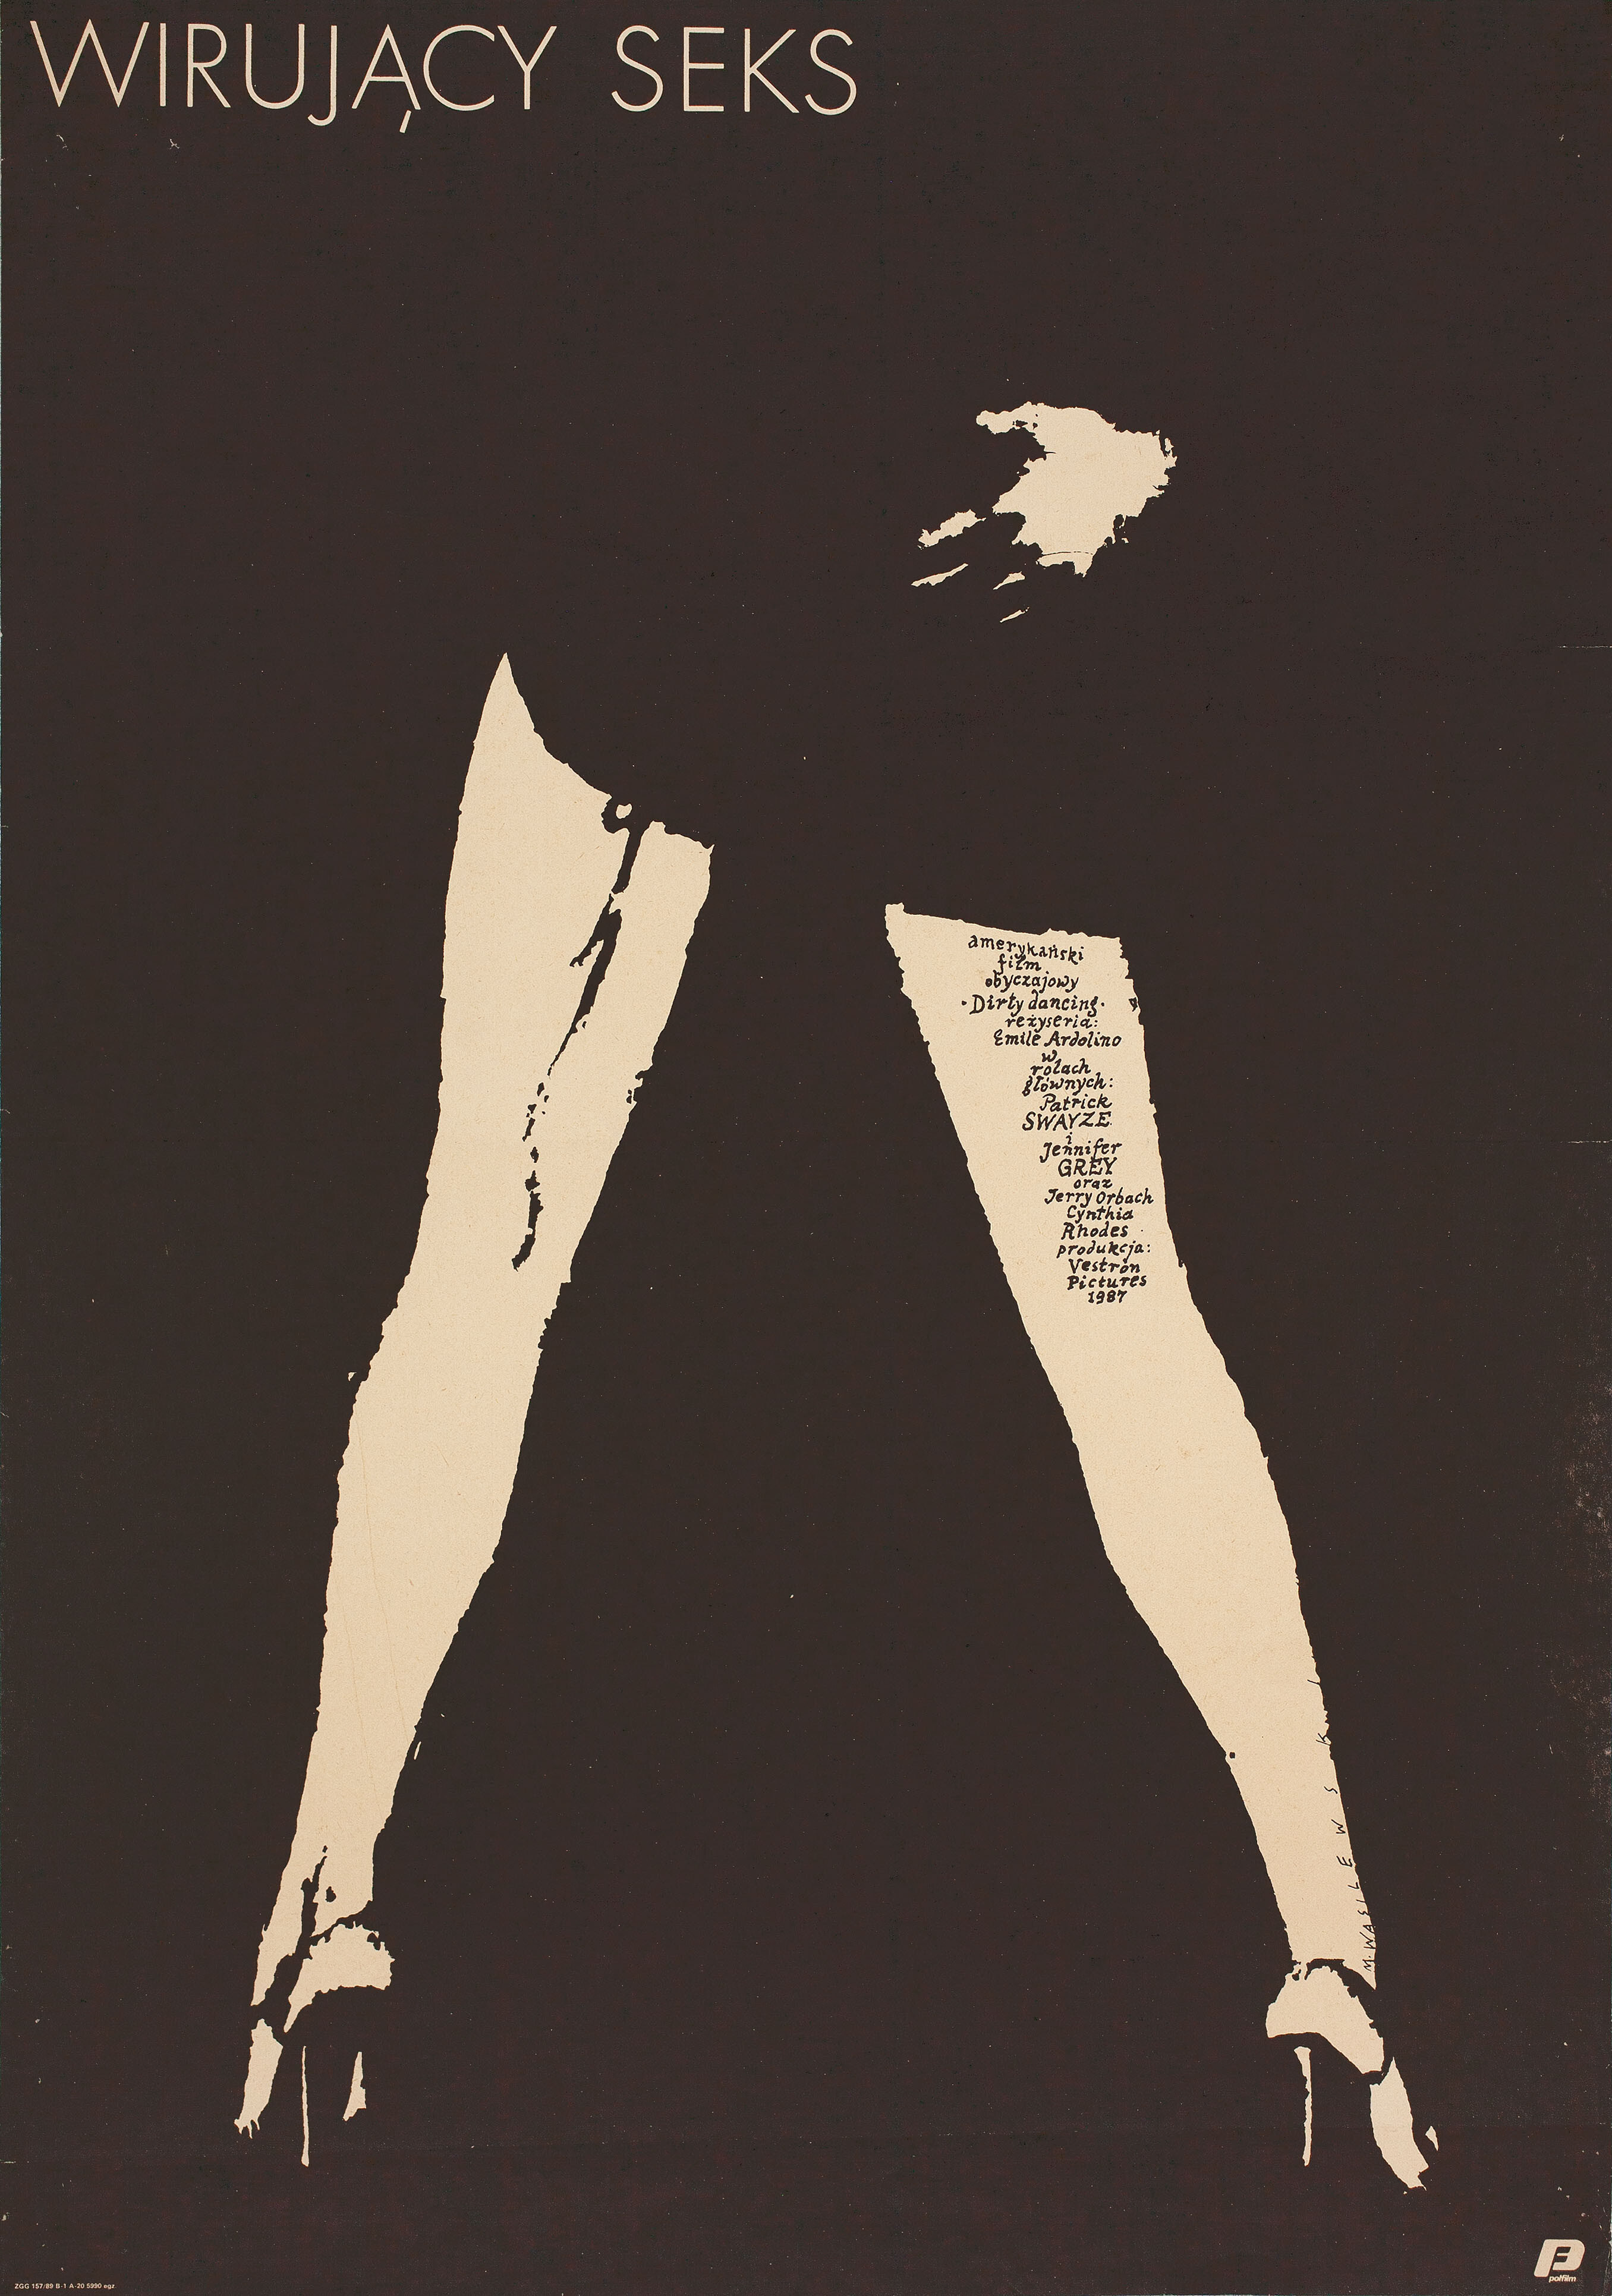 Грязные танцы (Dirty Dancing, 1987), режиссёр Эмиль Ардолино, польский плакат к фильму, 1987 год, автор Мечислав Василевский